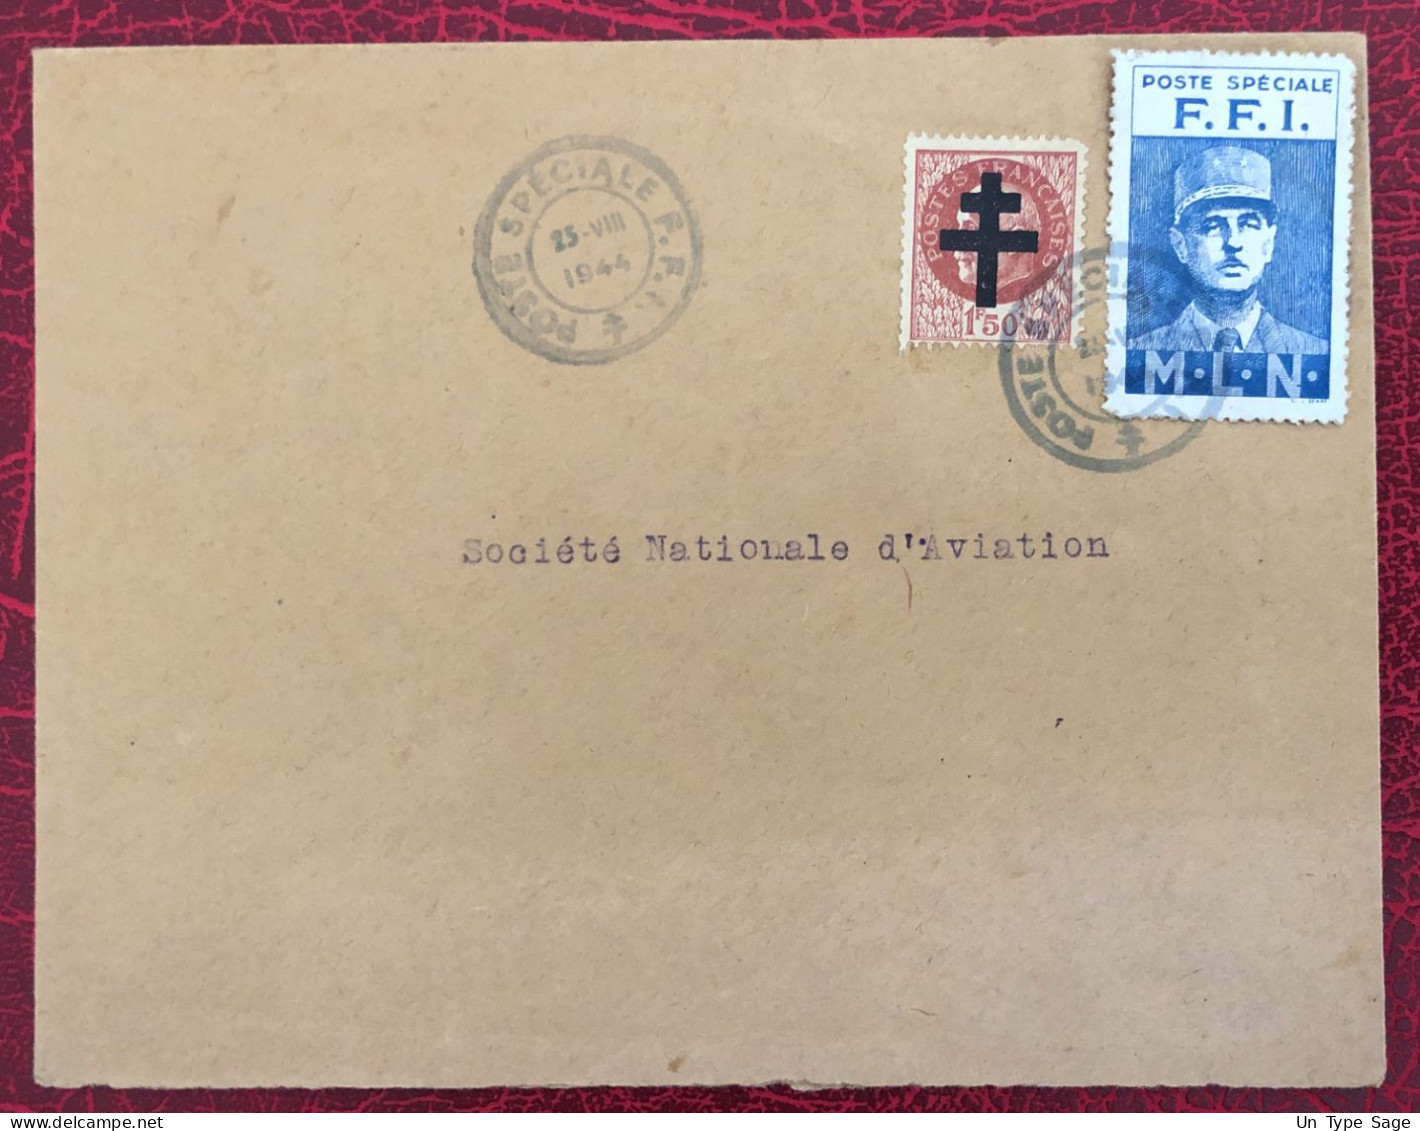 France, POSTE SPECIALE F.F.I. Sur Enveloppe - (B3629) - Guerre De 1939-45